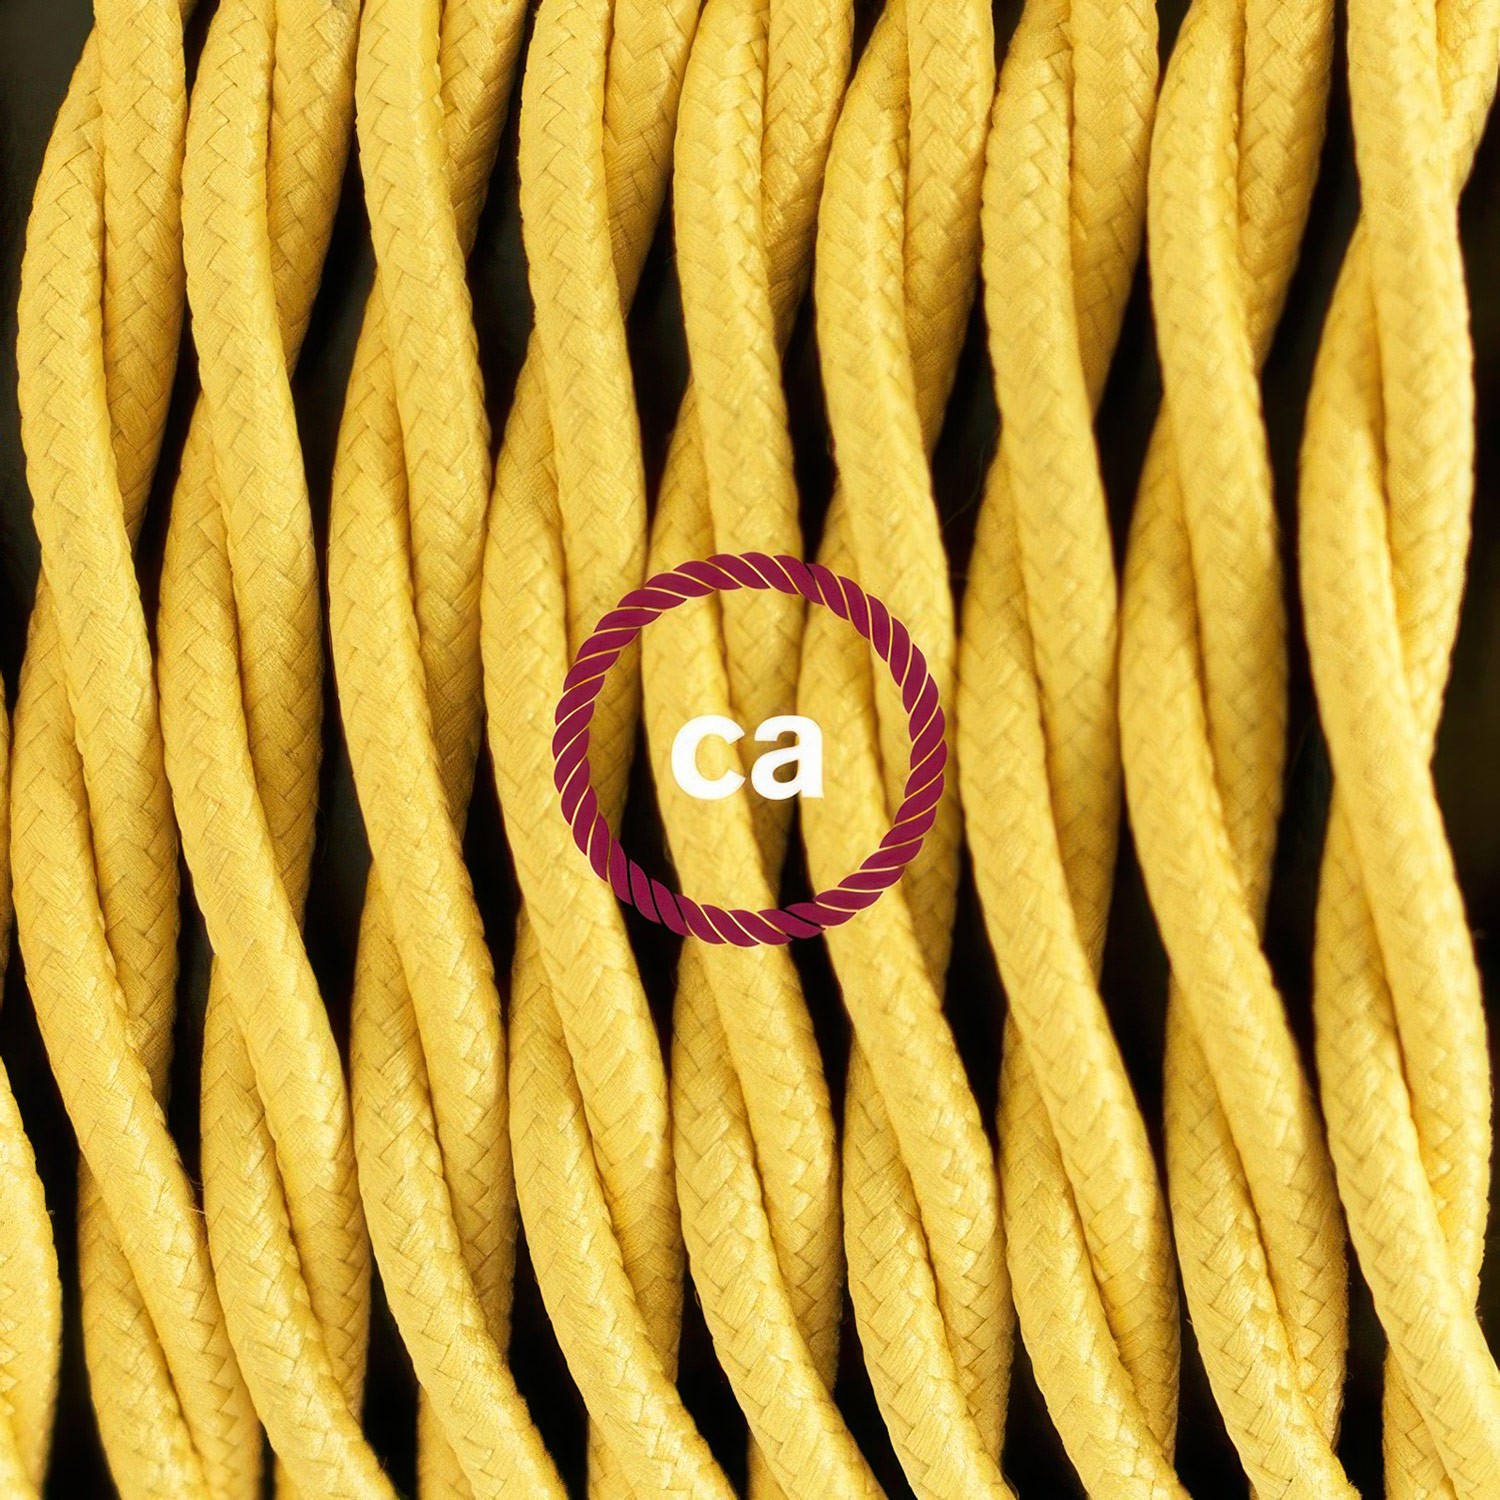 Cableado para lámpara de pie, cable TM10 Efecto Seda Amarillo 3 m. Elige tu el color de la clavija y del interruptor!